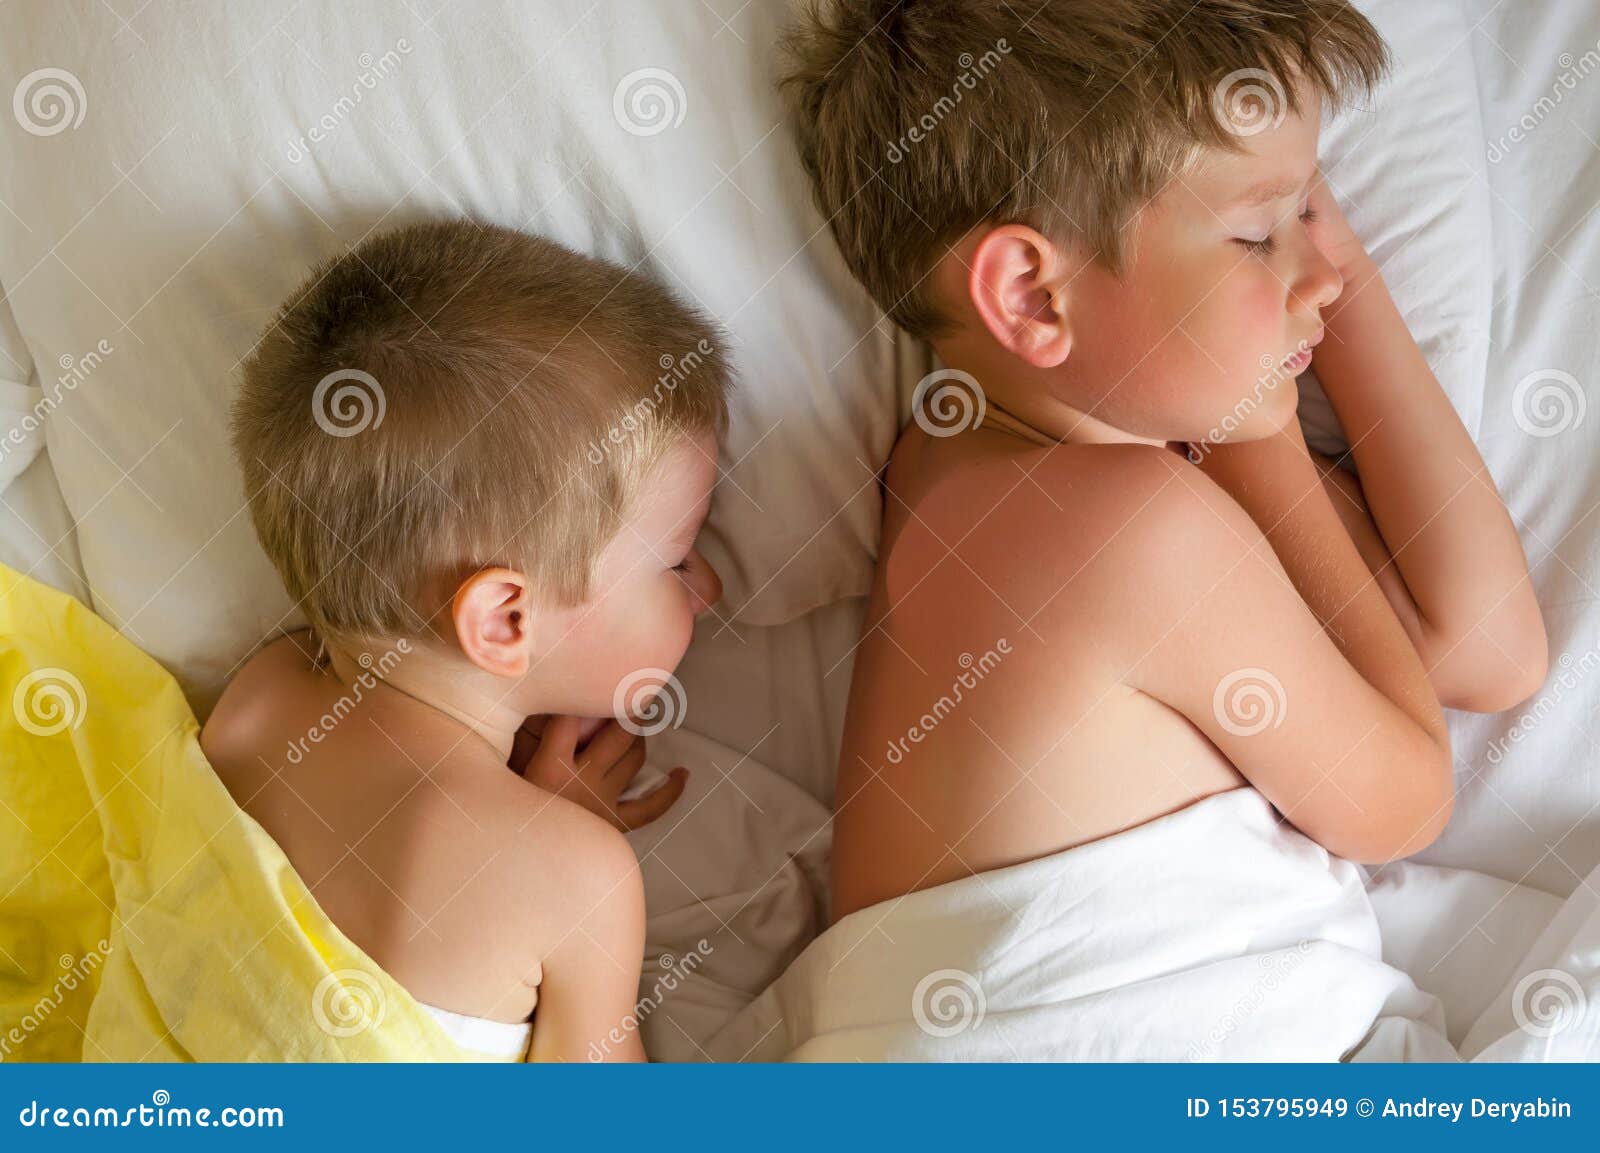 Спать с сестрой в одной кровати. Кровать для двух братьев. Спящий брат. Брат с братишкой в кроватке фото.